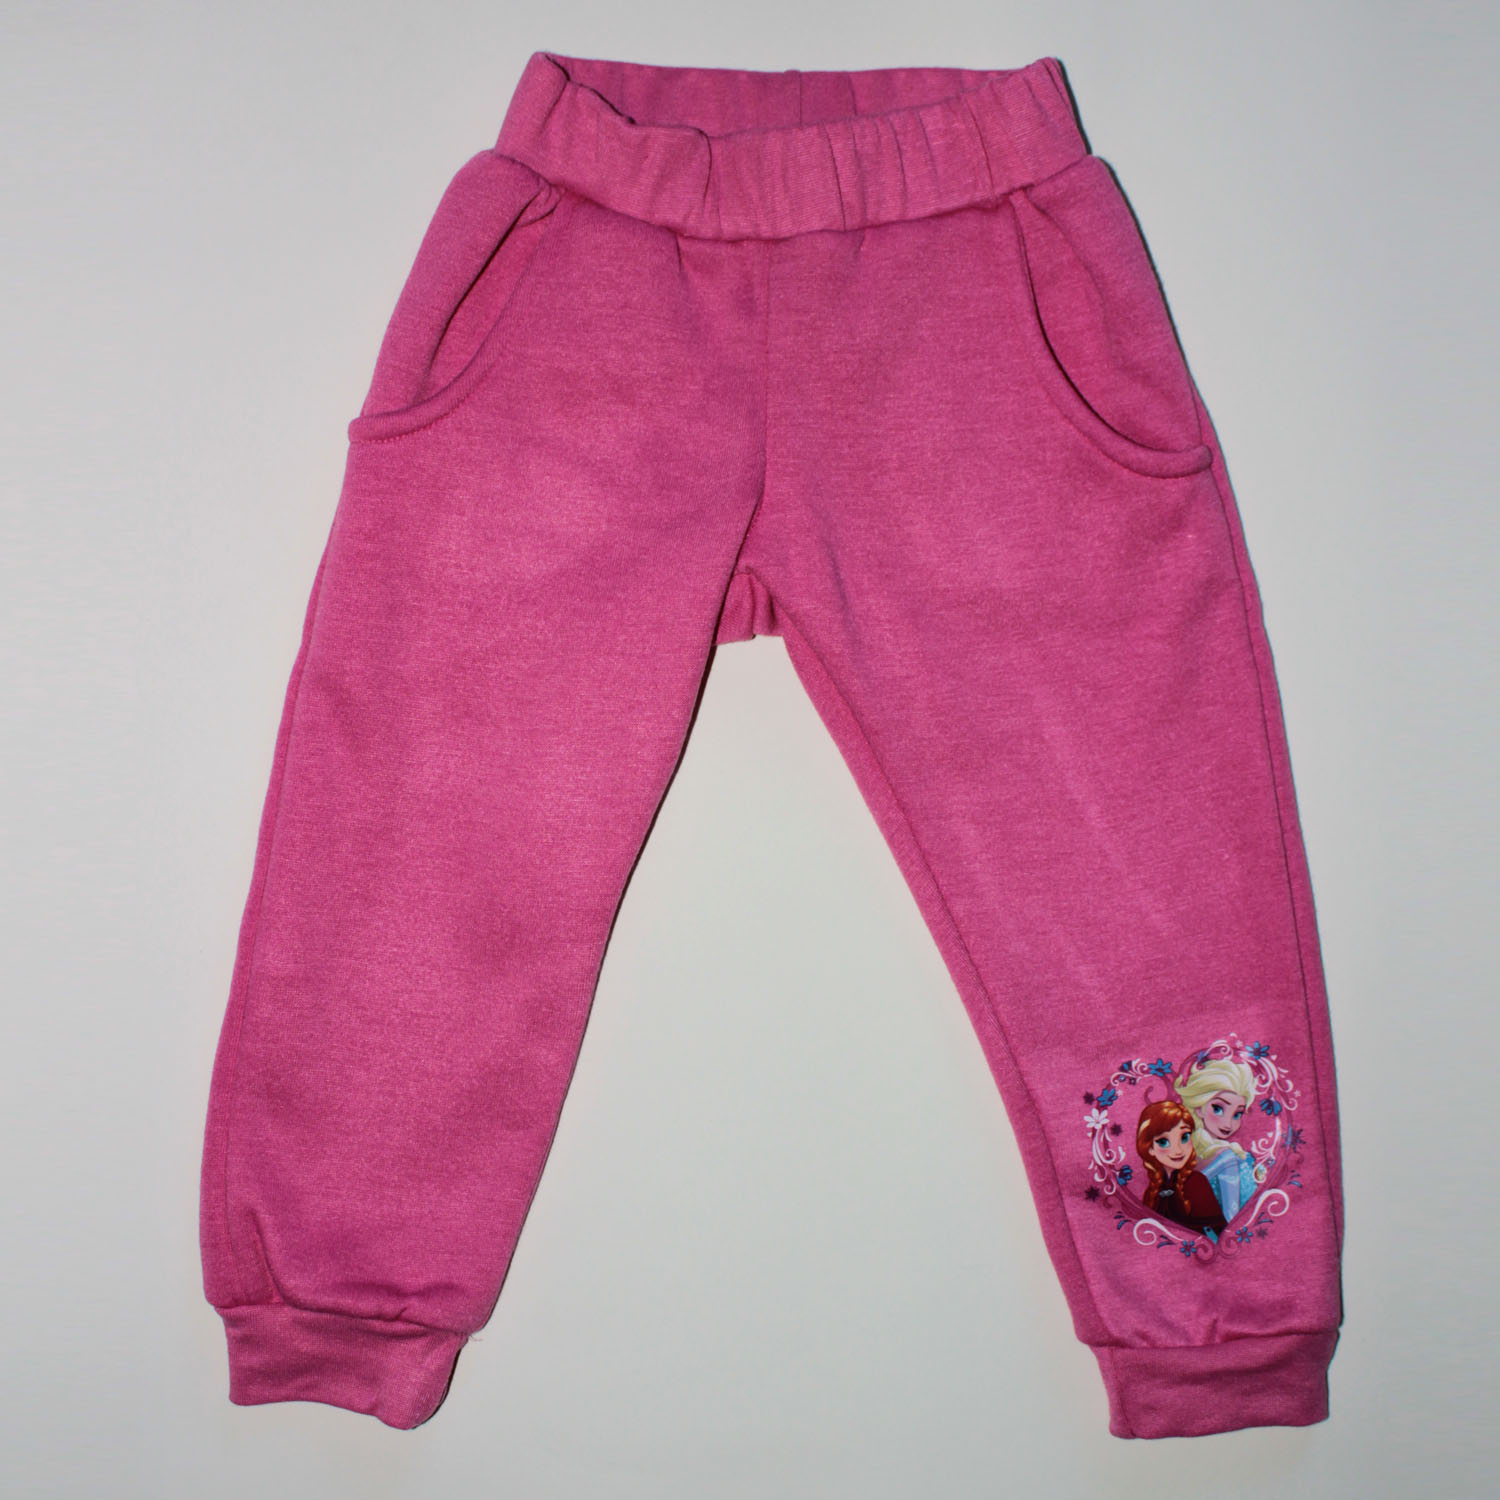 Pantalón chándal ONEILL niña deportivos rosa